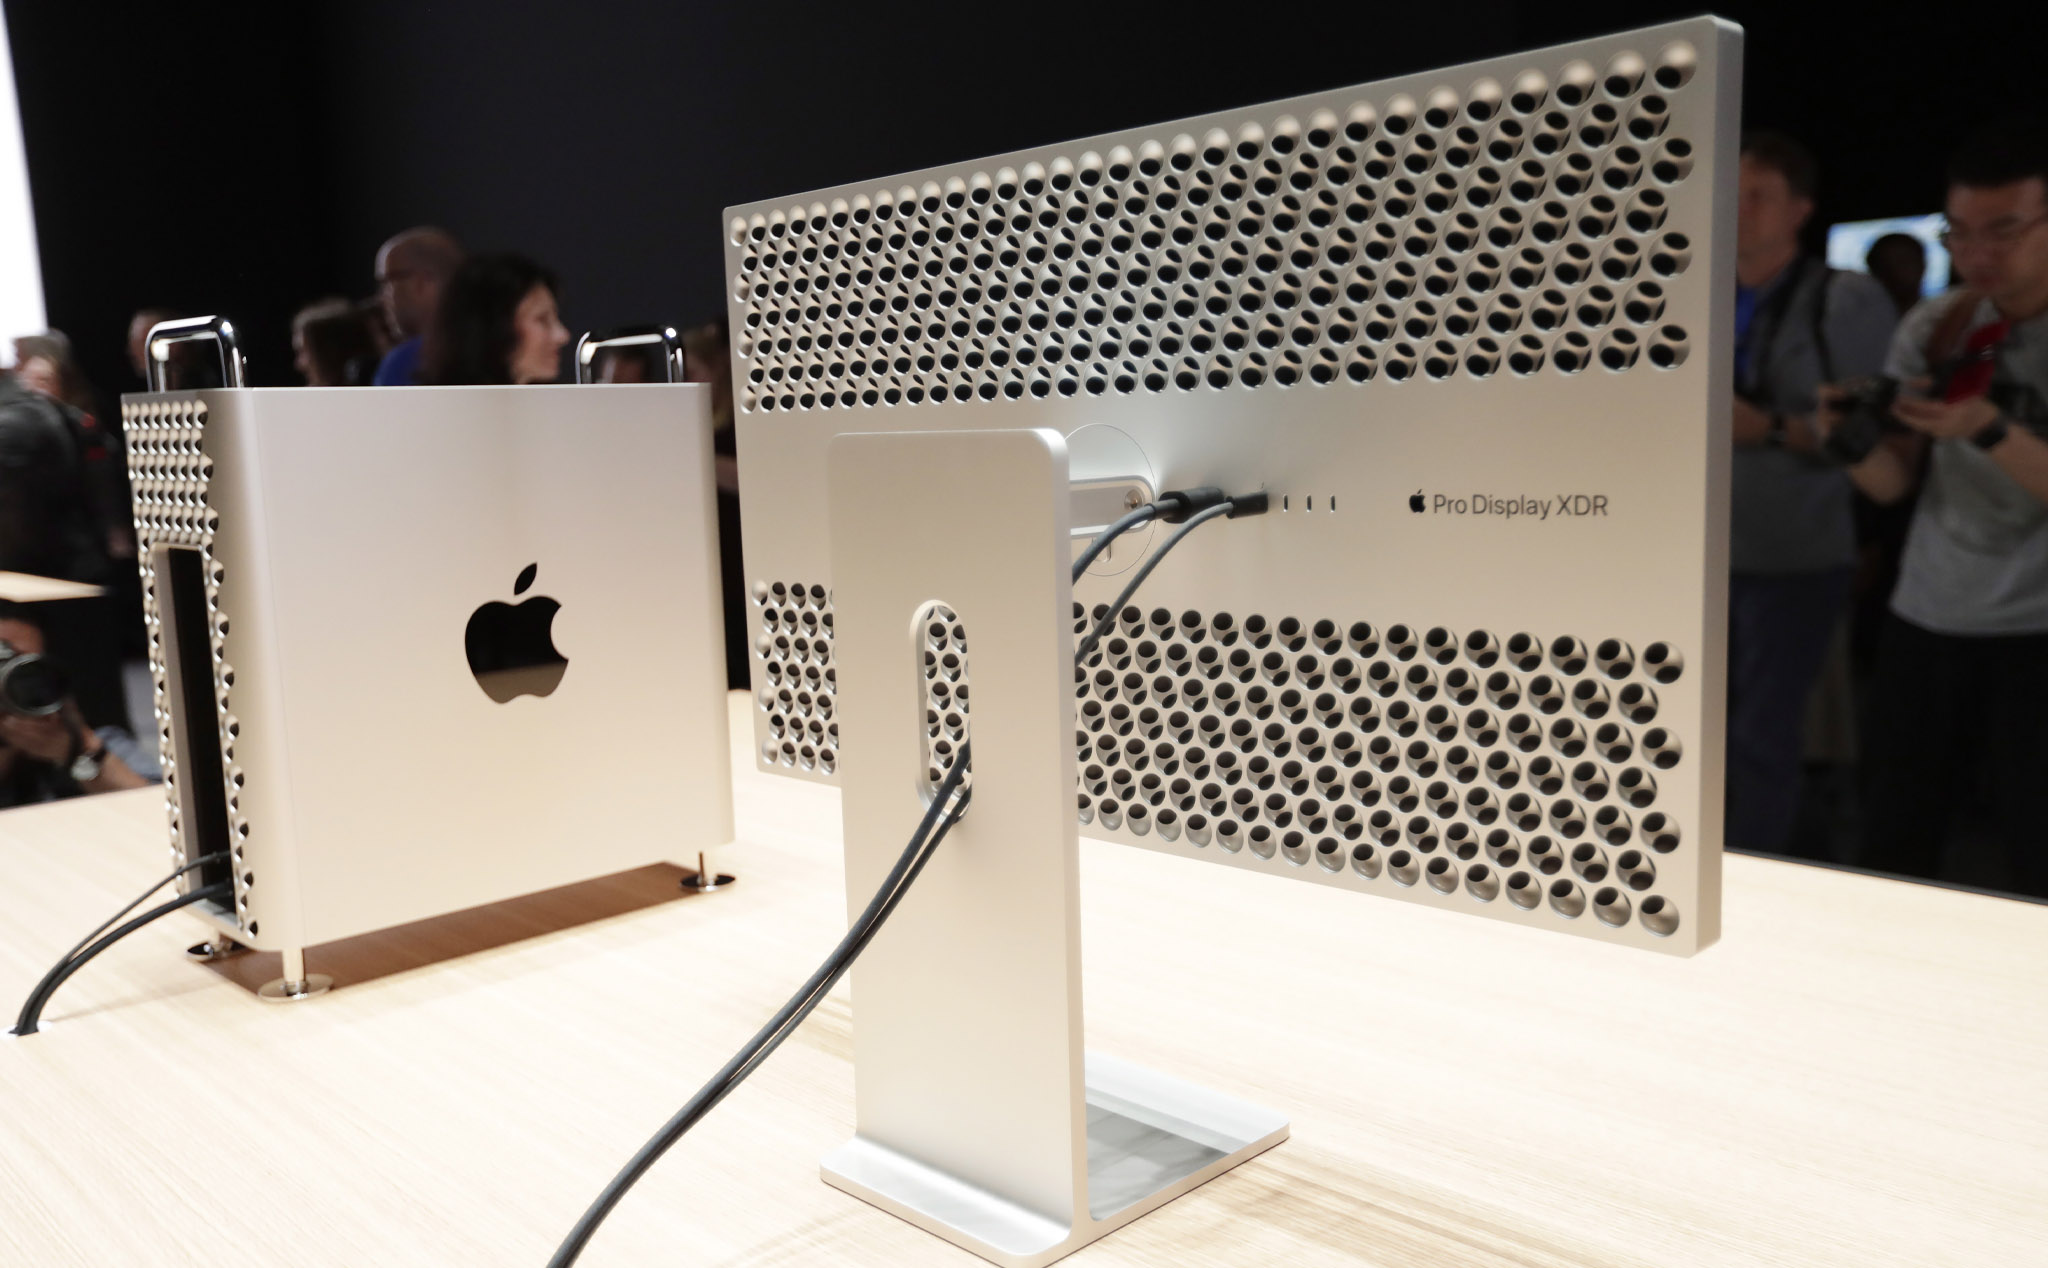 “Chân đế nghìn Đô” của Mac Pro dưới phương diện marketing: Apple vừa bỏ lỡ cơ hội PR?